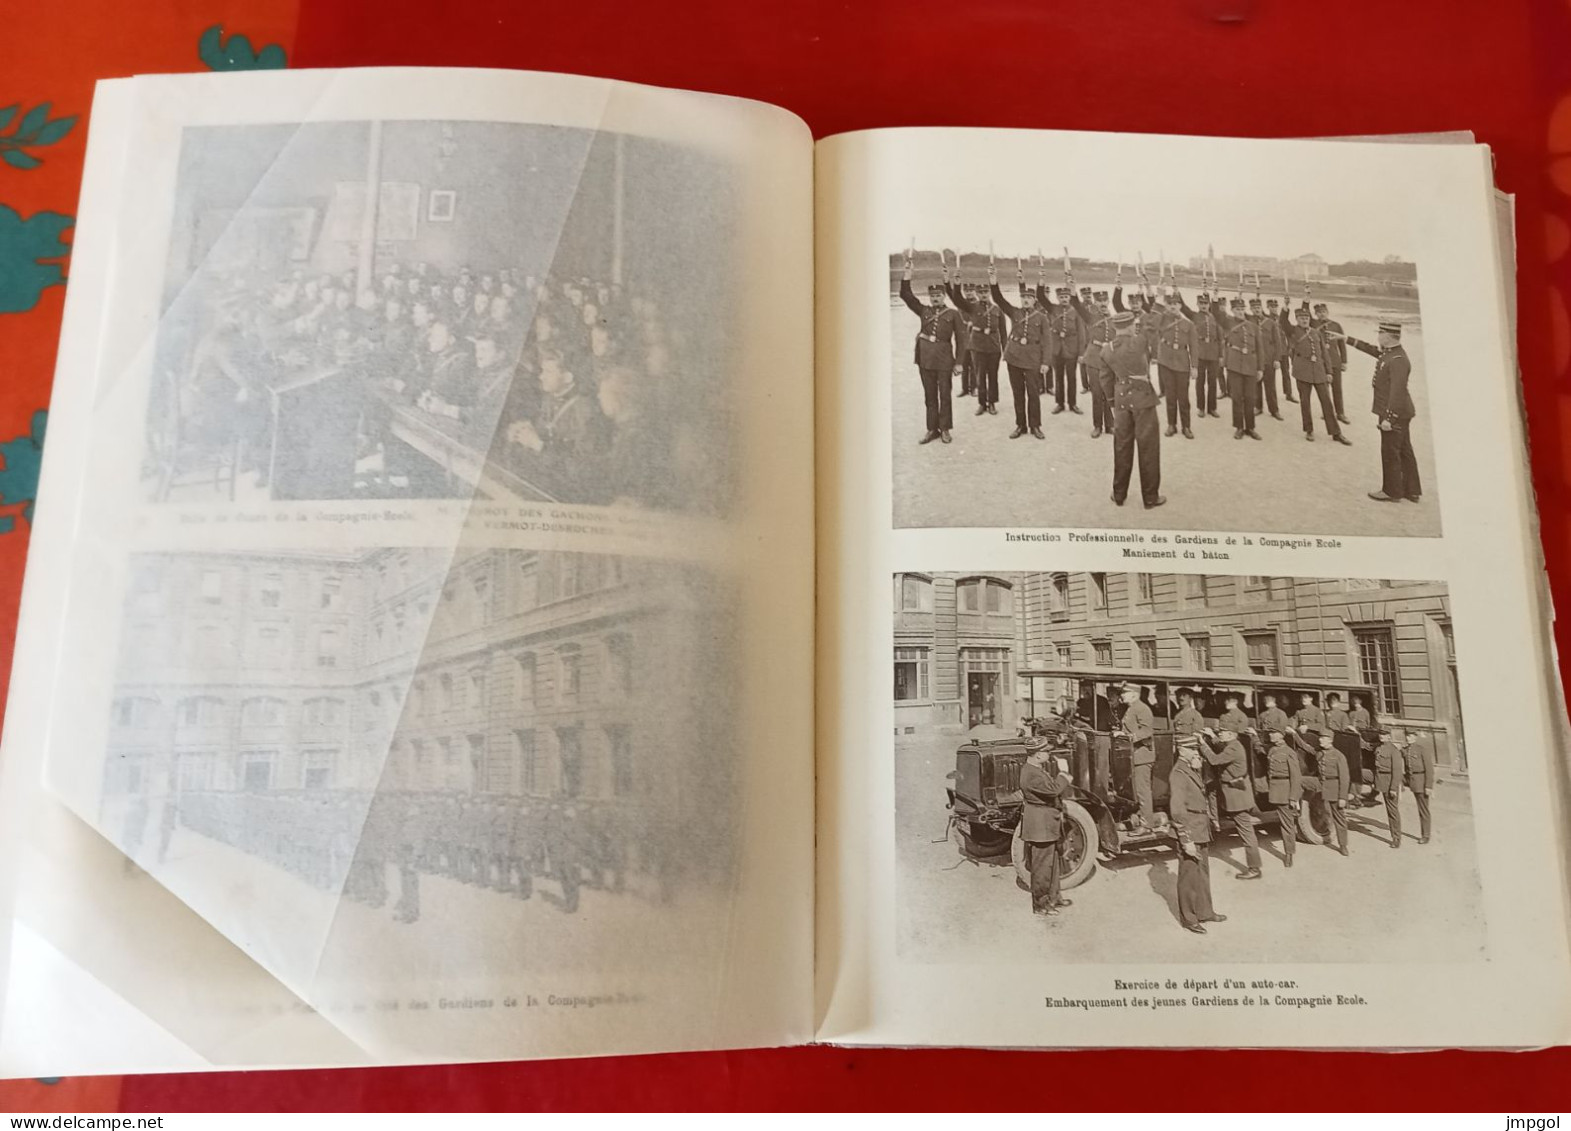 Préfecture de Police Paris Police Municipale Album des Gardiens de la Paix 1927-1934 80 Photos Commissaires Brigades